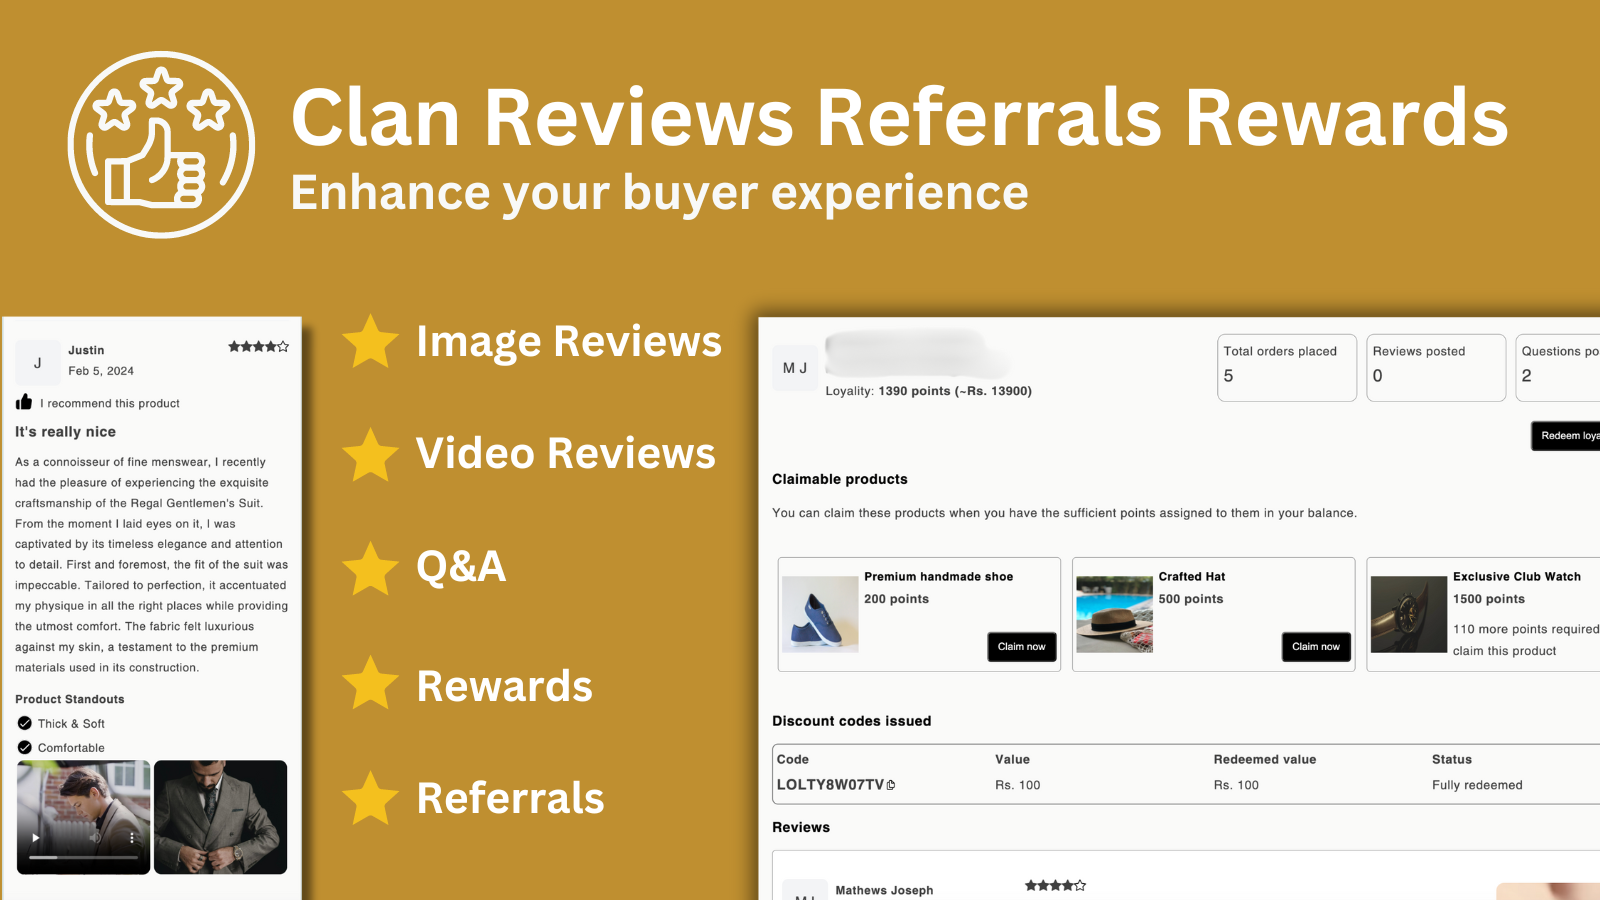 Aplicación Clan Reviews Rewards Referrals